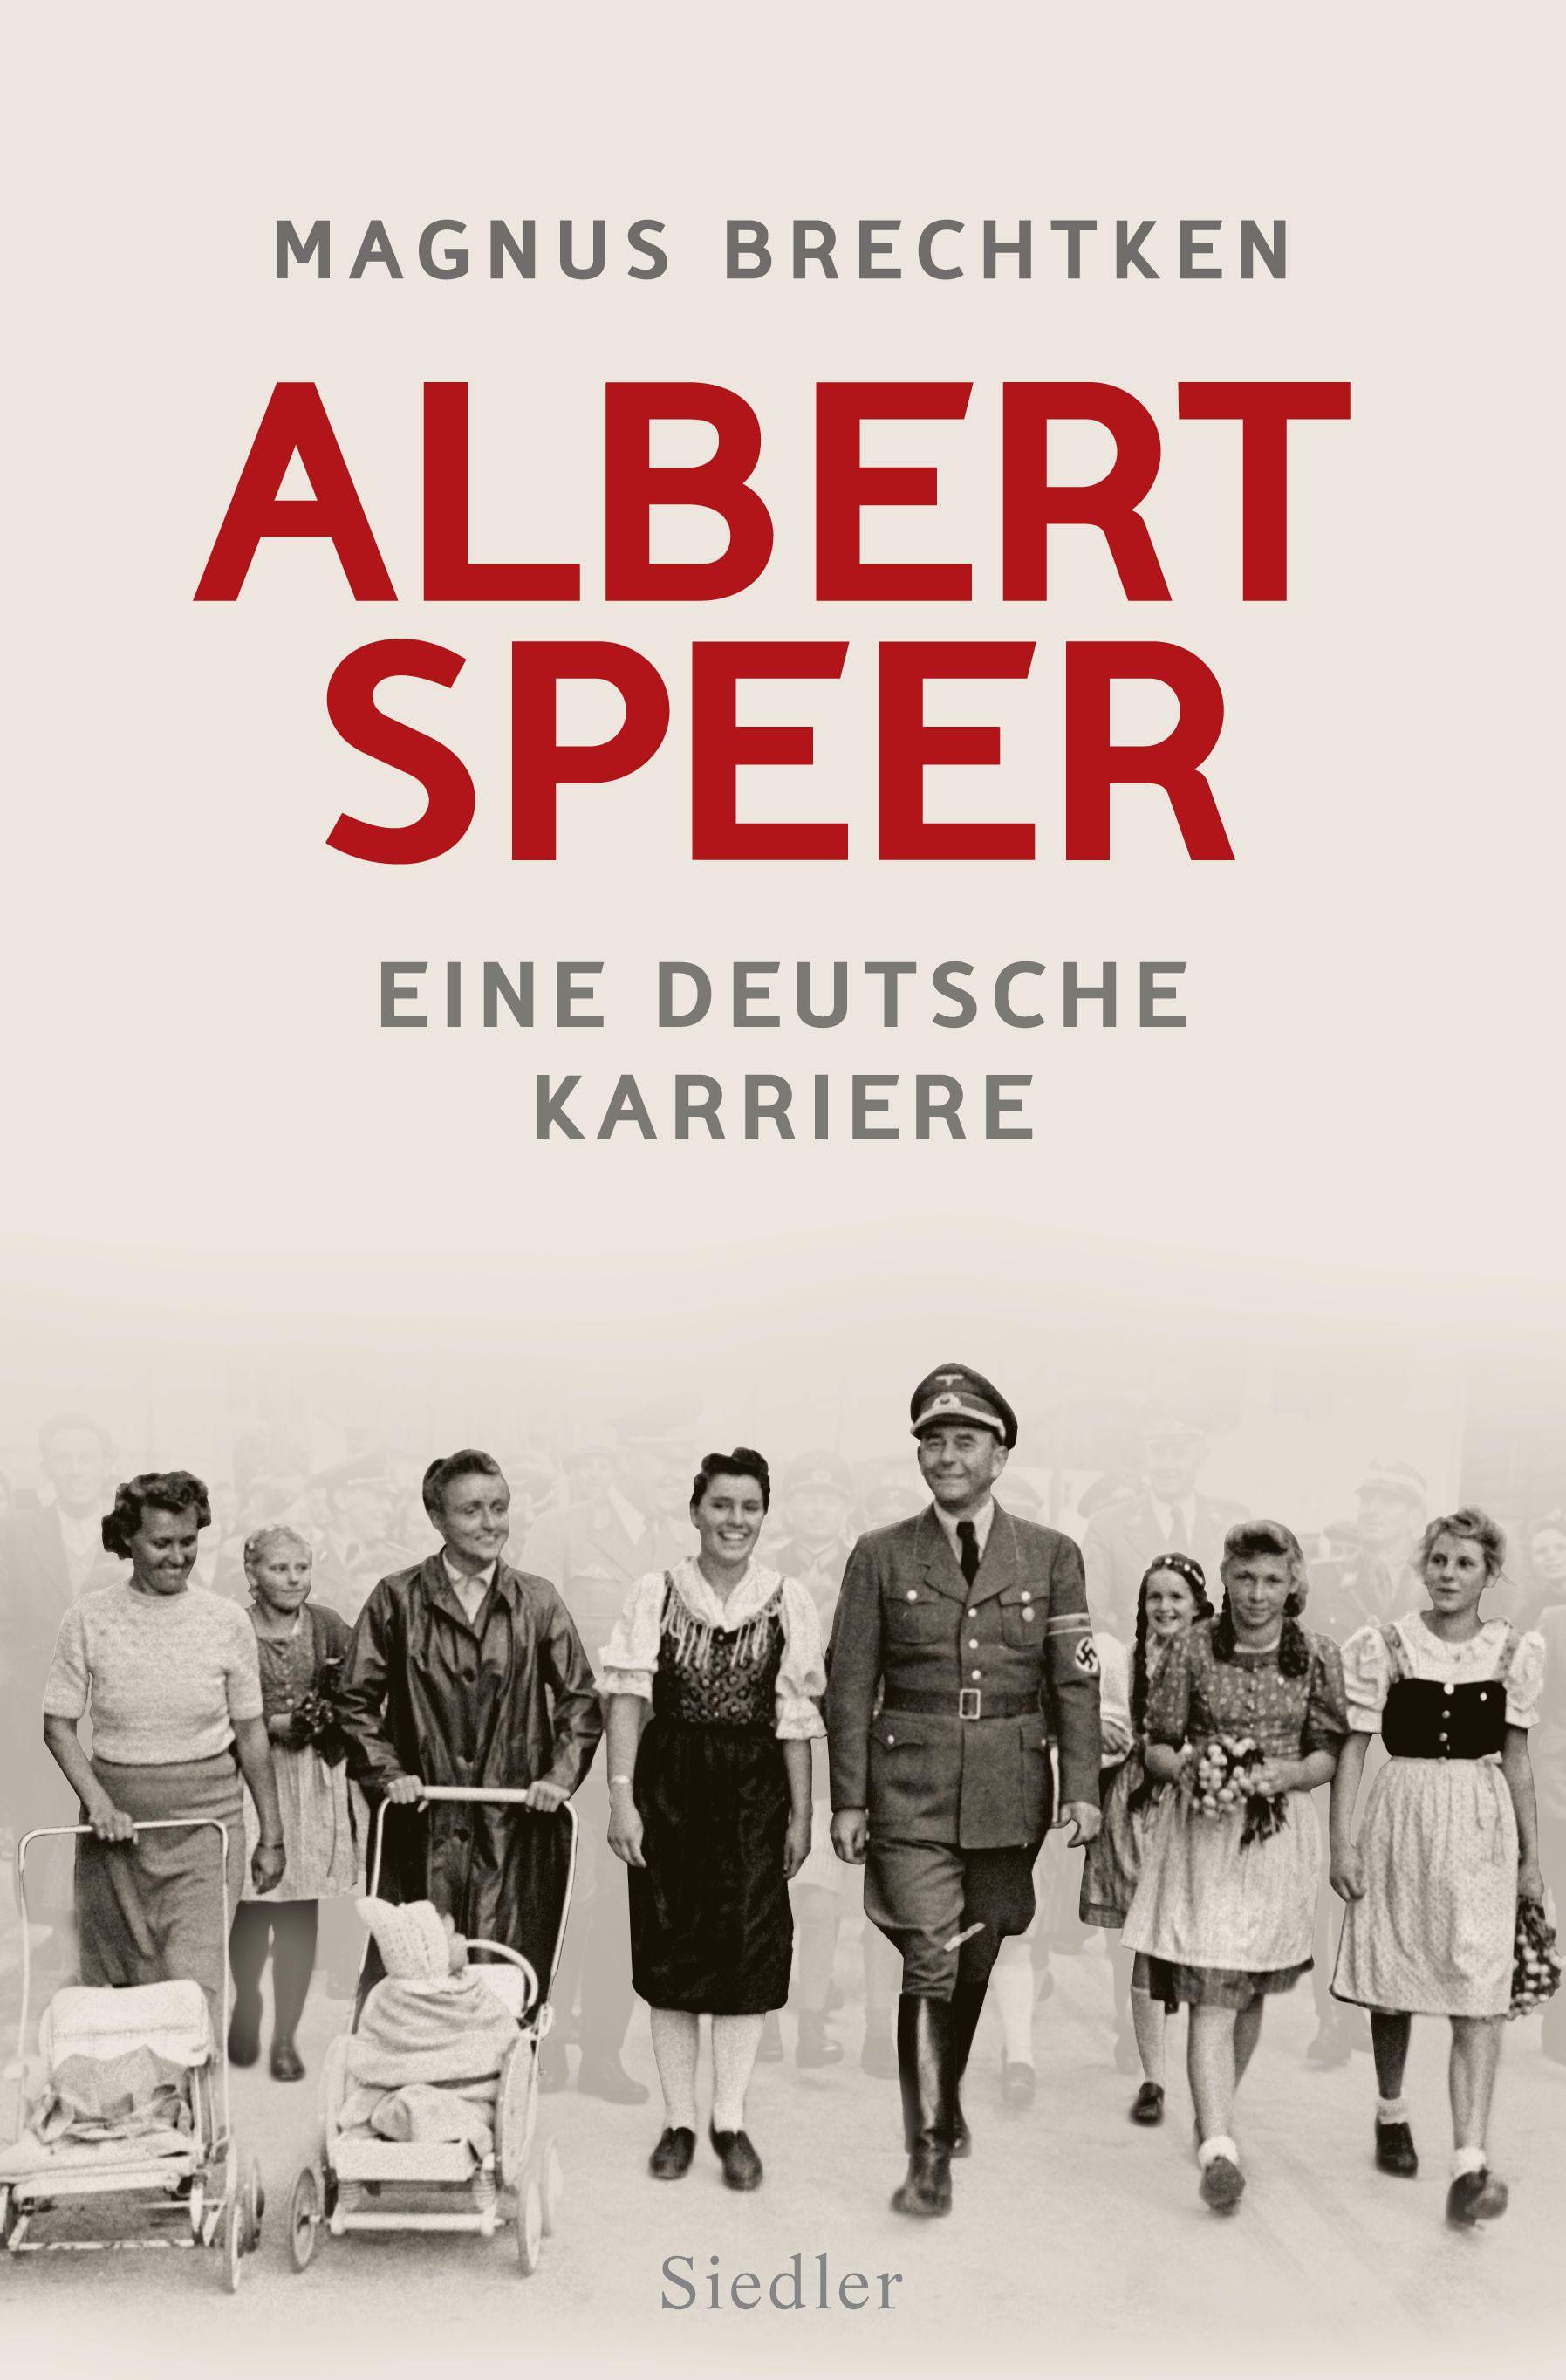 Buchcover: Magnus Brechtken: Albert Speer – Eine deutsche Karriere. Siedler Verlag